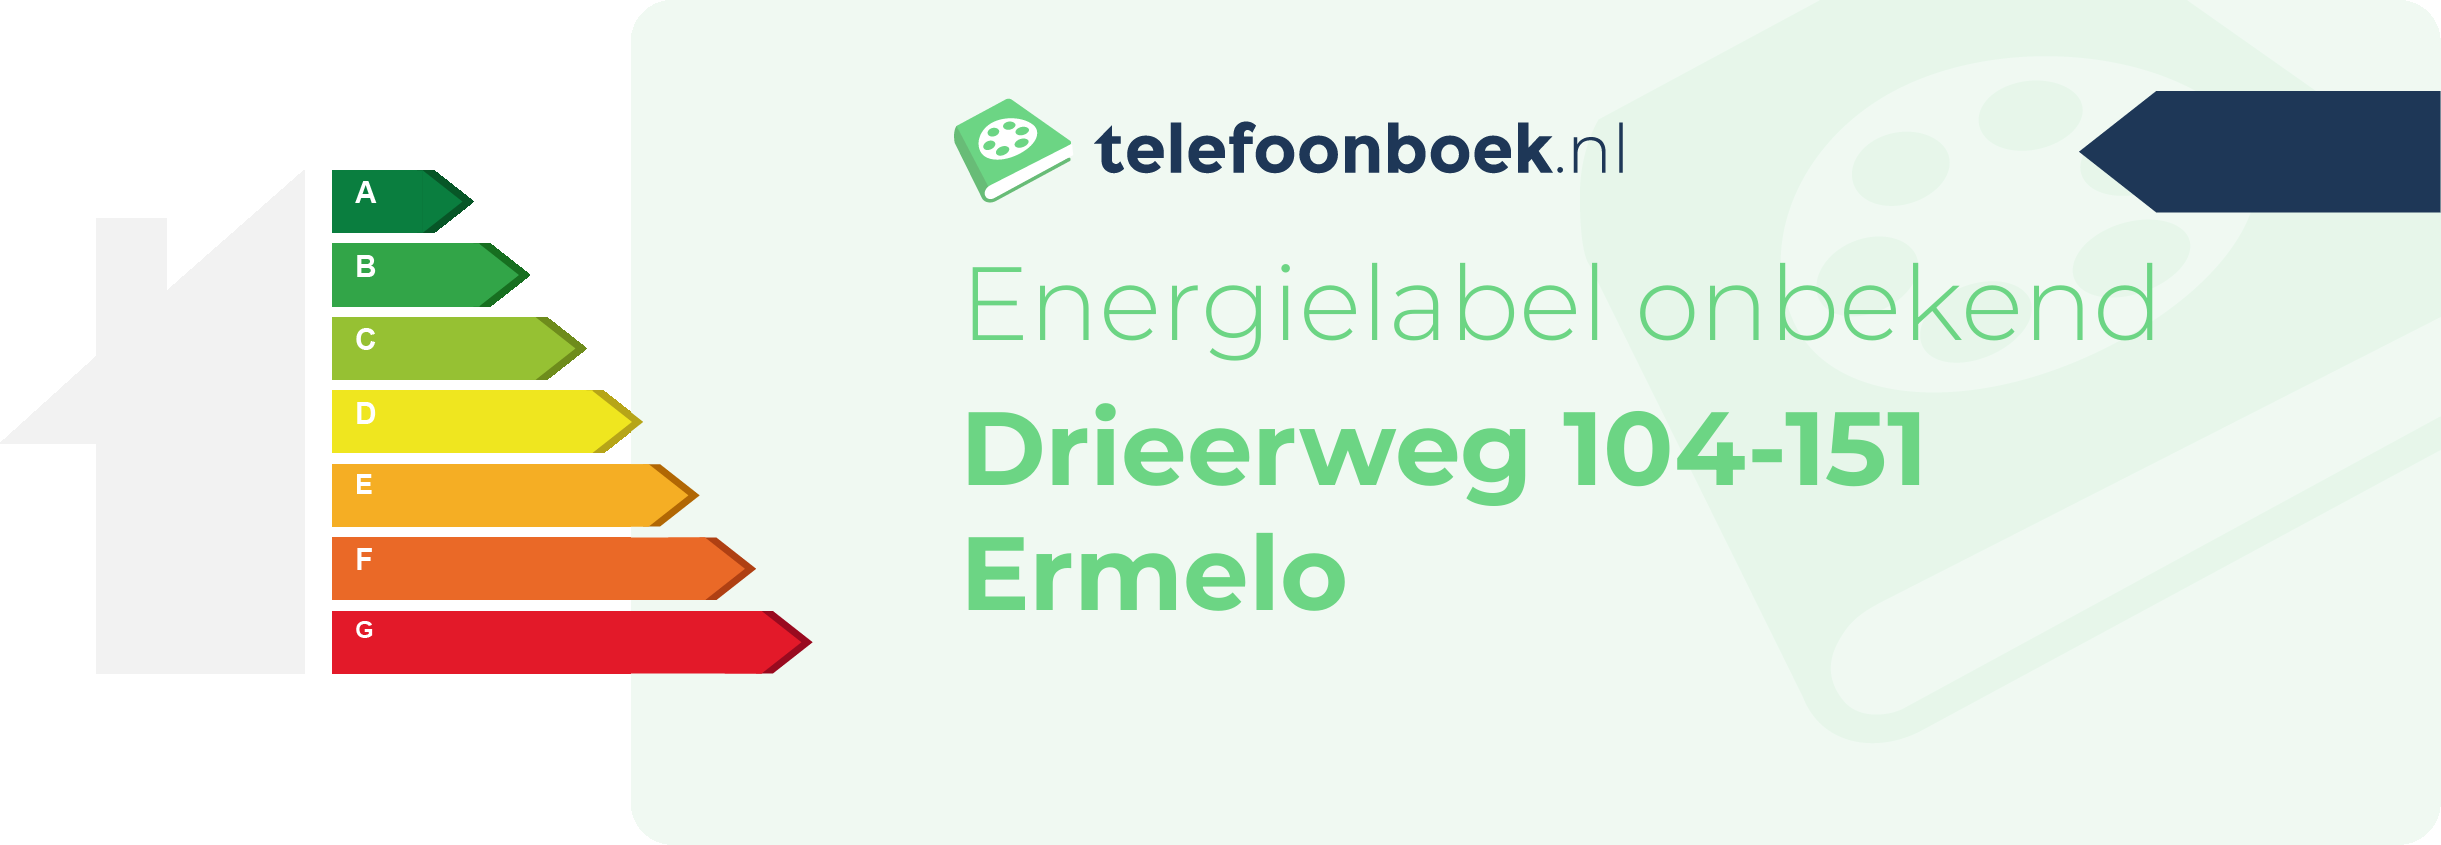 Energielabel Drieerweg 104-151 Ermelo